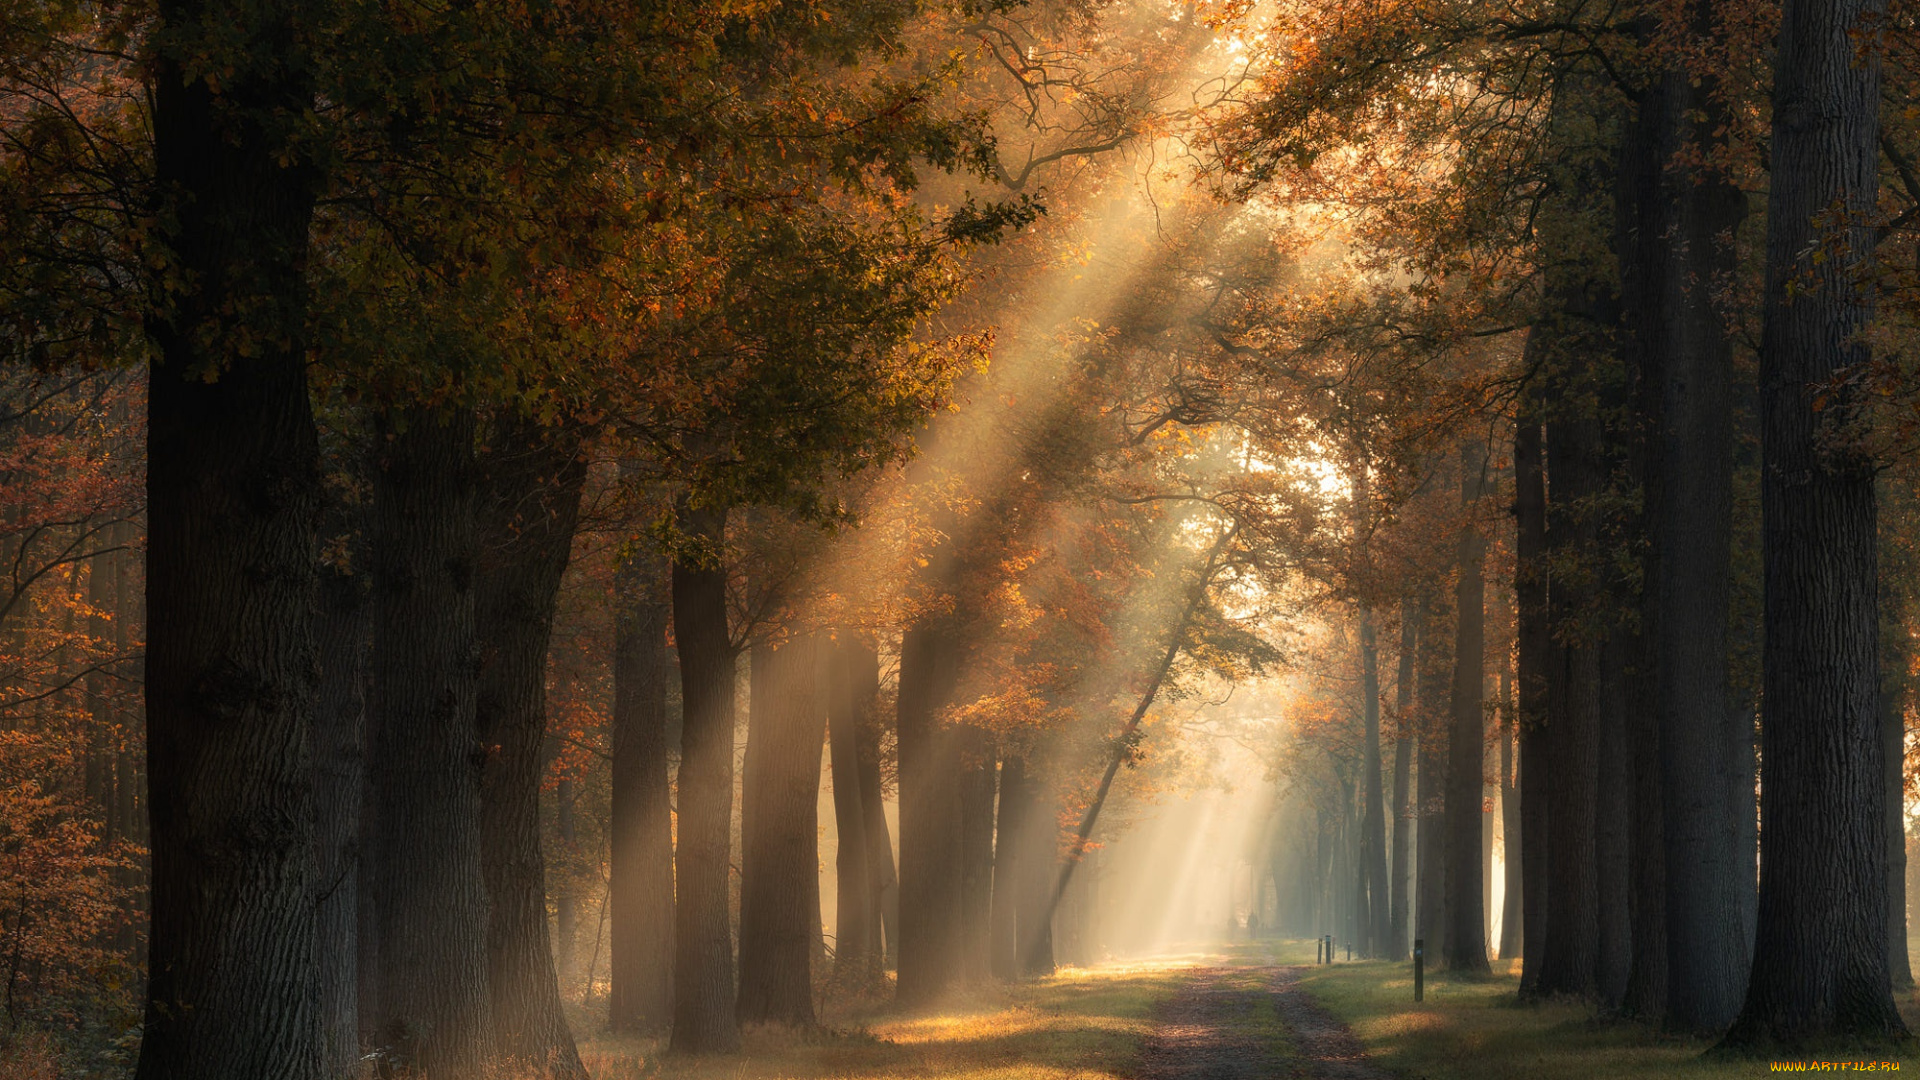 природа, парк, дорога, осень, лес, солнце, лучи, свет, деревья, туман, стволы, листва, утро, дымка, аллея